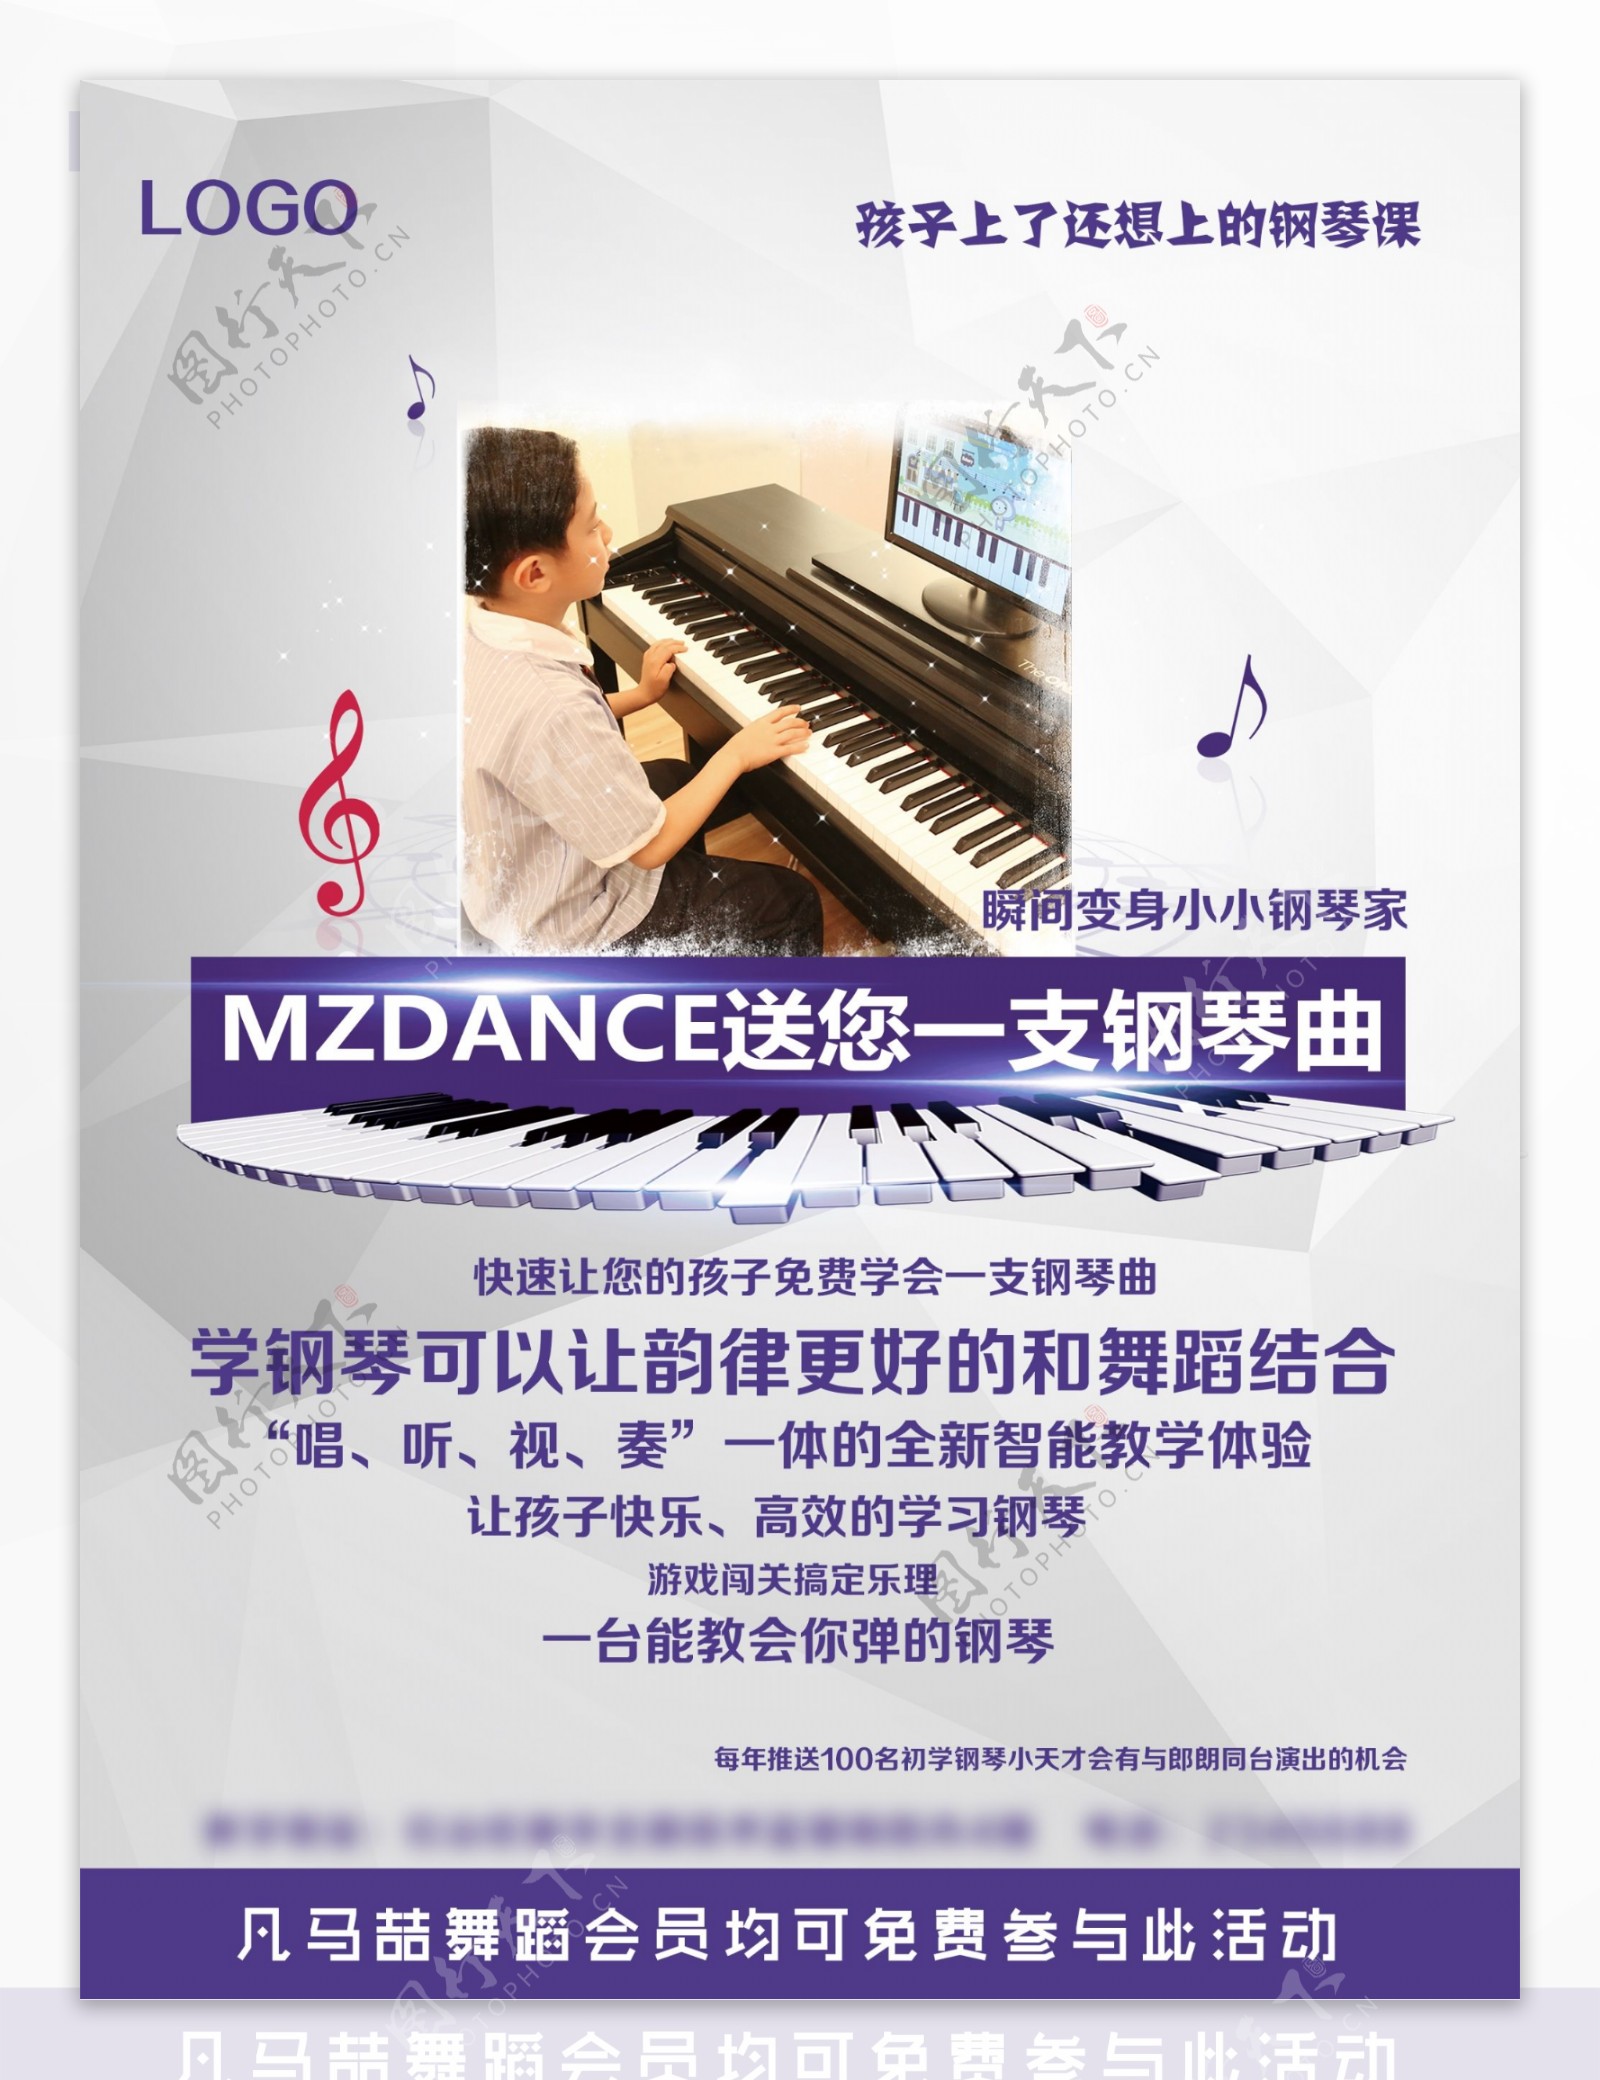 钢琴教室训练招生创意海报